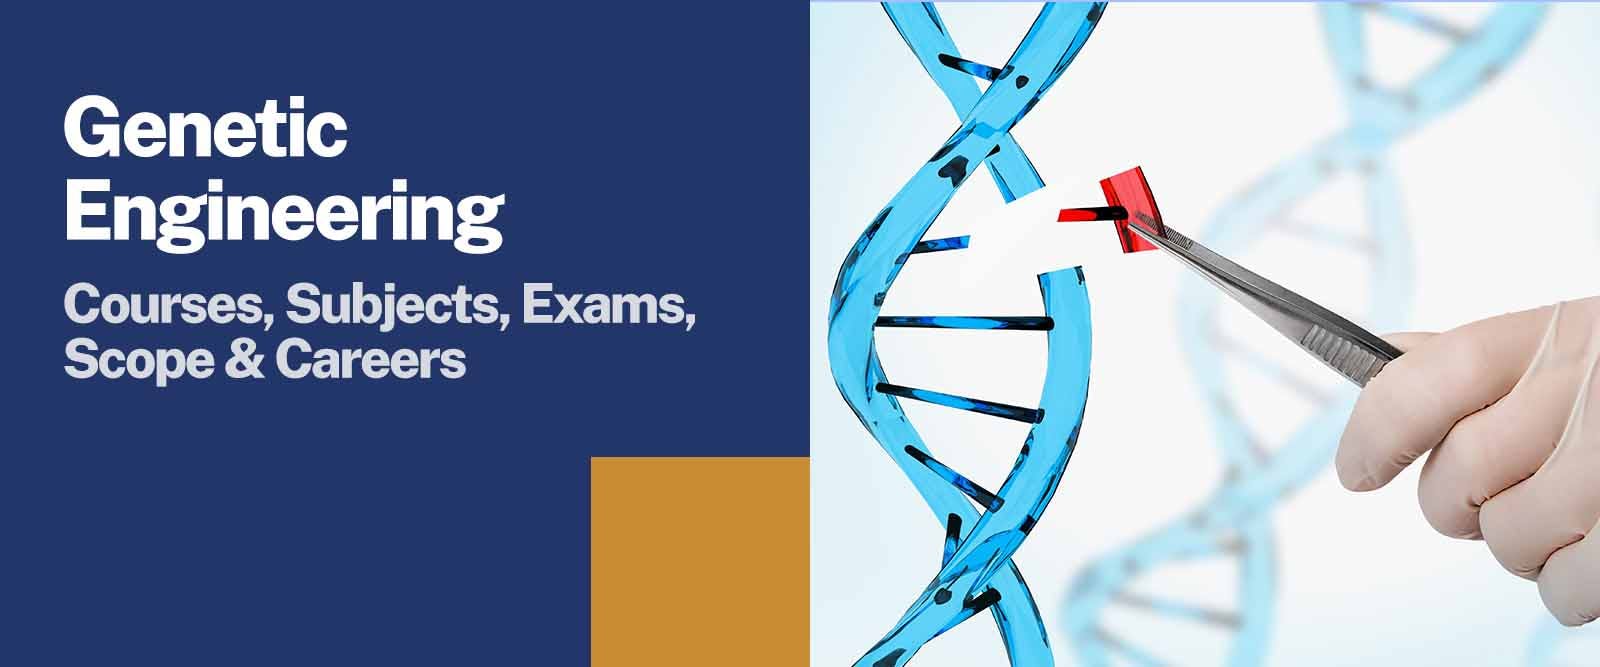 Genetic Engineering Courses, Scope & Careers